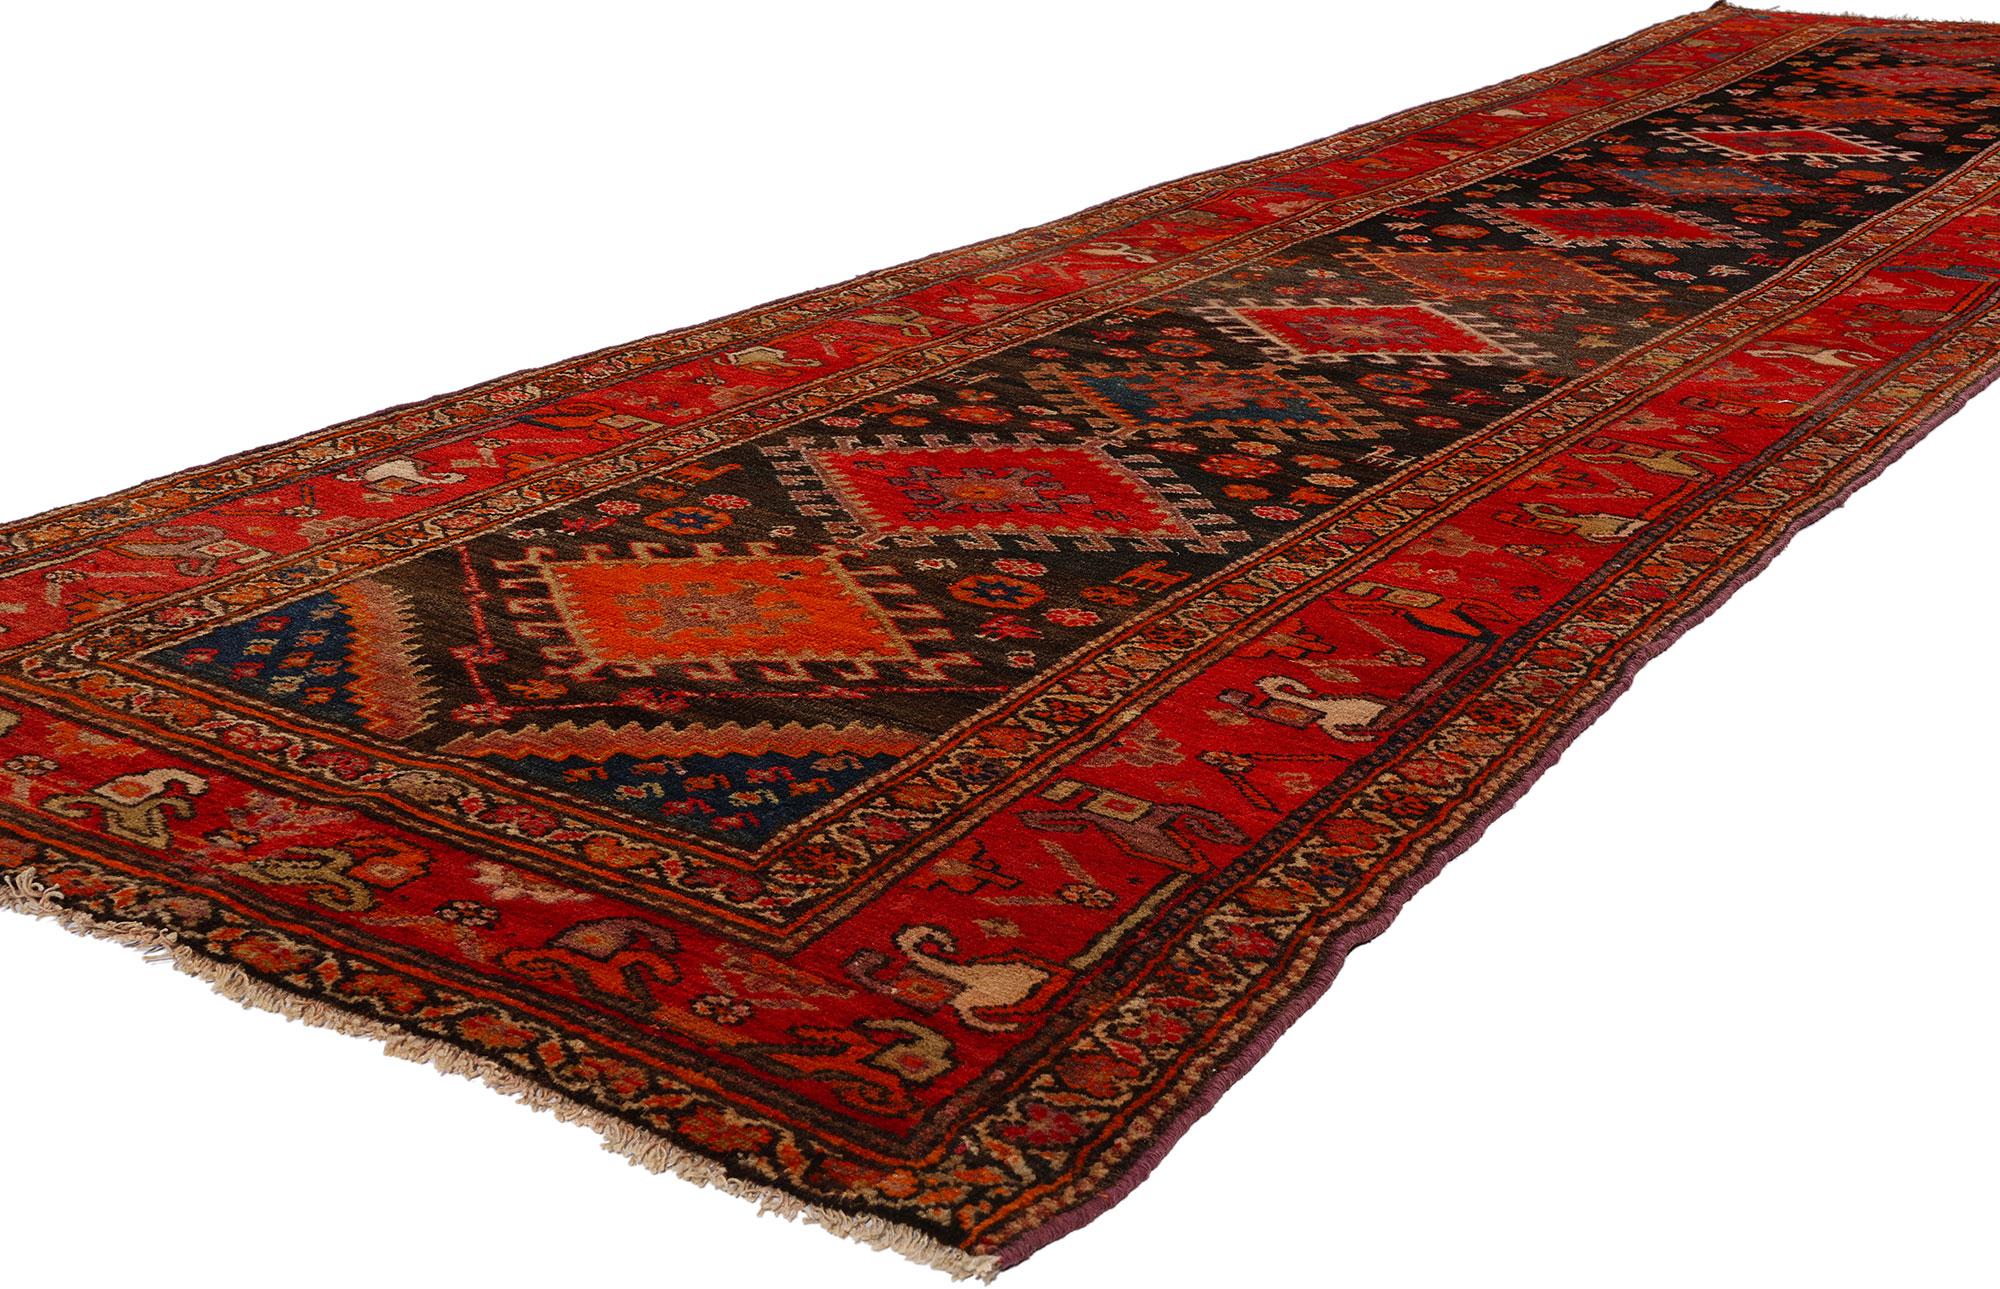 53875 Tapis persan antique Azerbaïdjan Runner, 03'05 x 13'00. Les tapis persans d'Azerbaïdjan sont des tapis traditionnels tissés à la main, originaires de la région d'Azerbaïdjan, dans le nord-ouest de l'Iran. Réputés pour leurs dessins complexes,